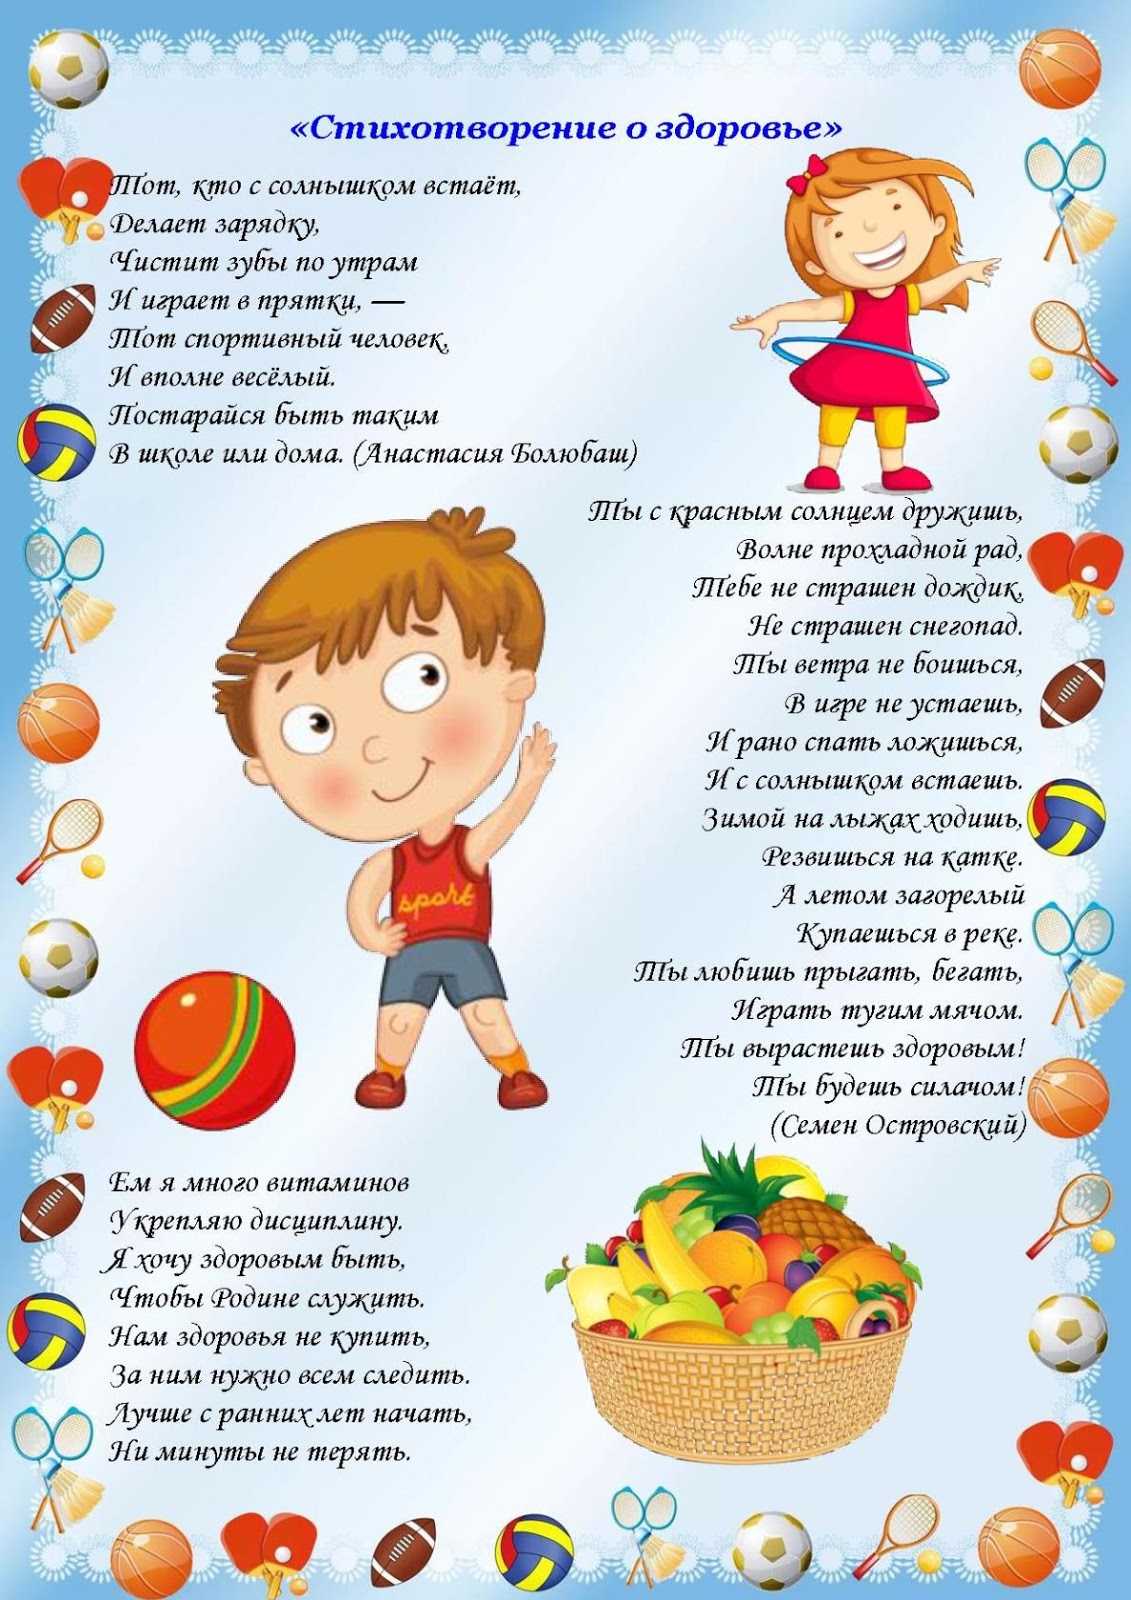 Короткие и красивые стихи про спорт и здоровье для детей